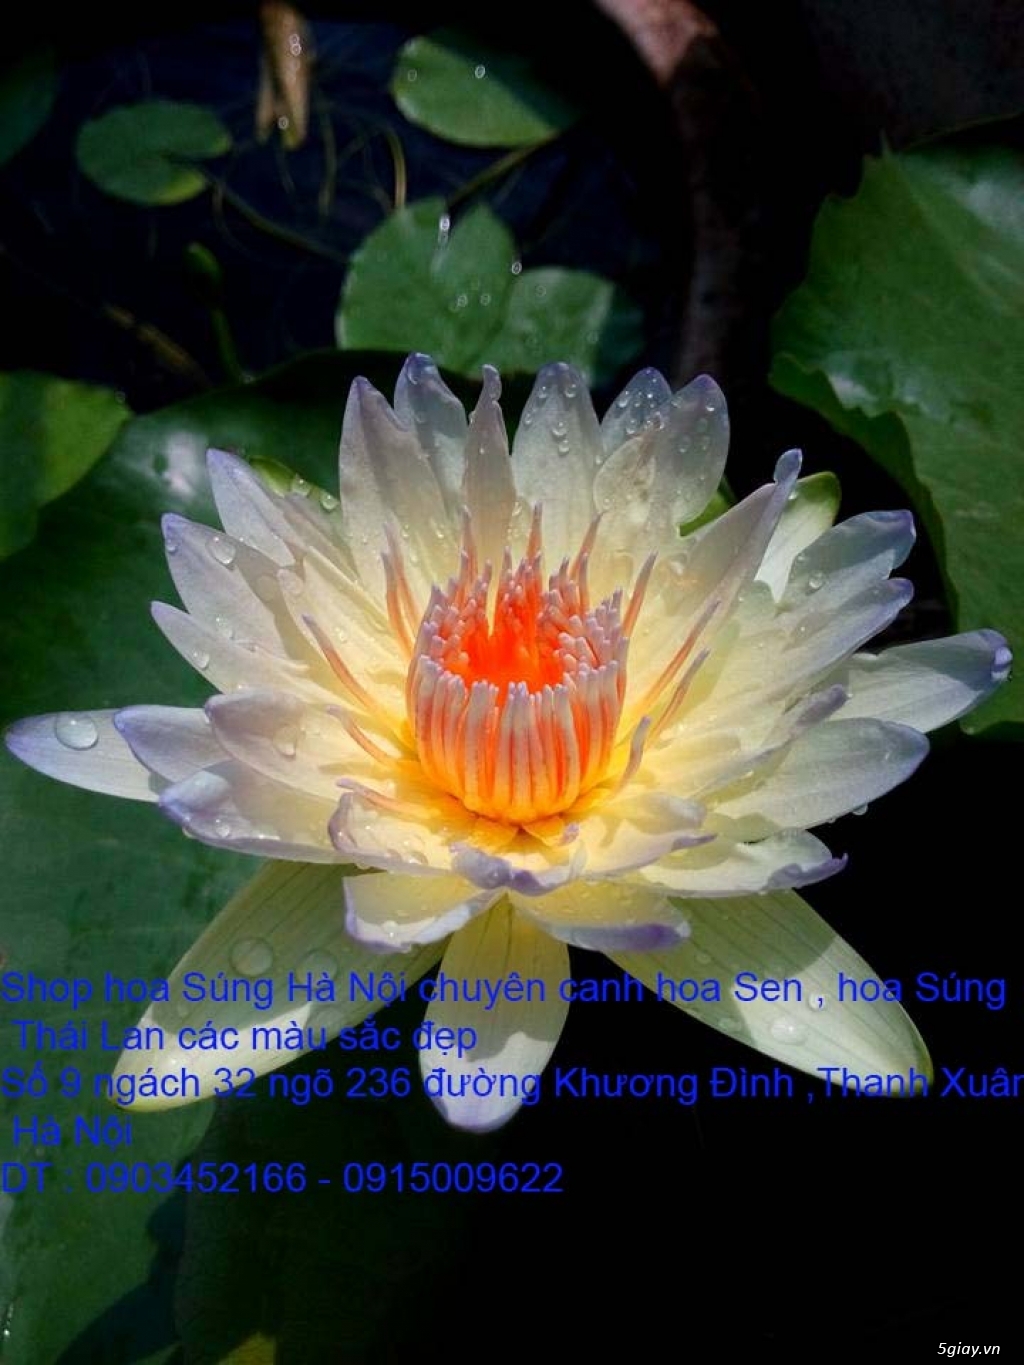 Bán hoa Sen , hoa Súng Thái Lan 120 màu sắc đẹp nở hoa bốn mùa tại HN - 5